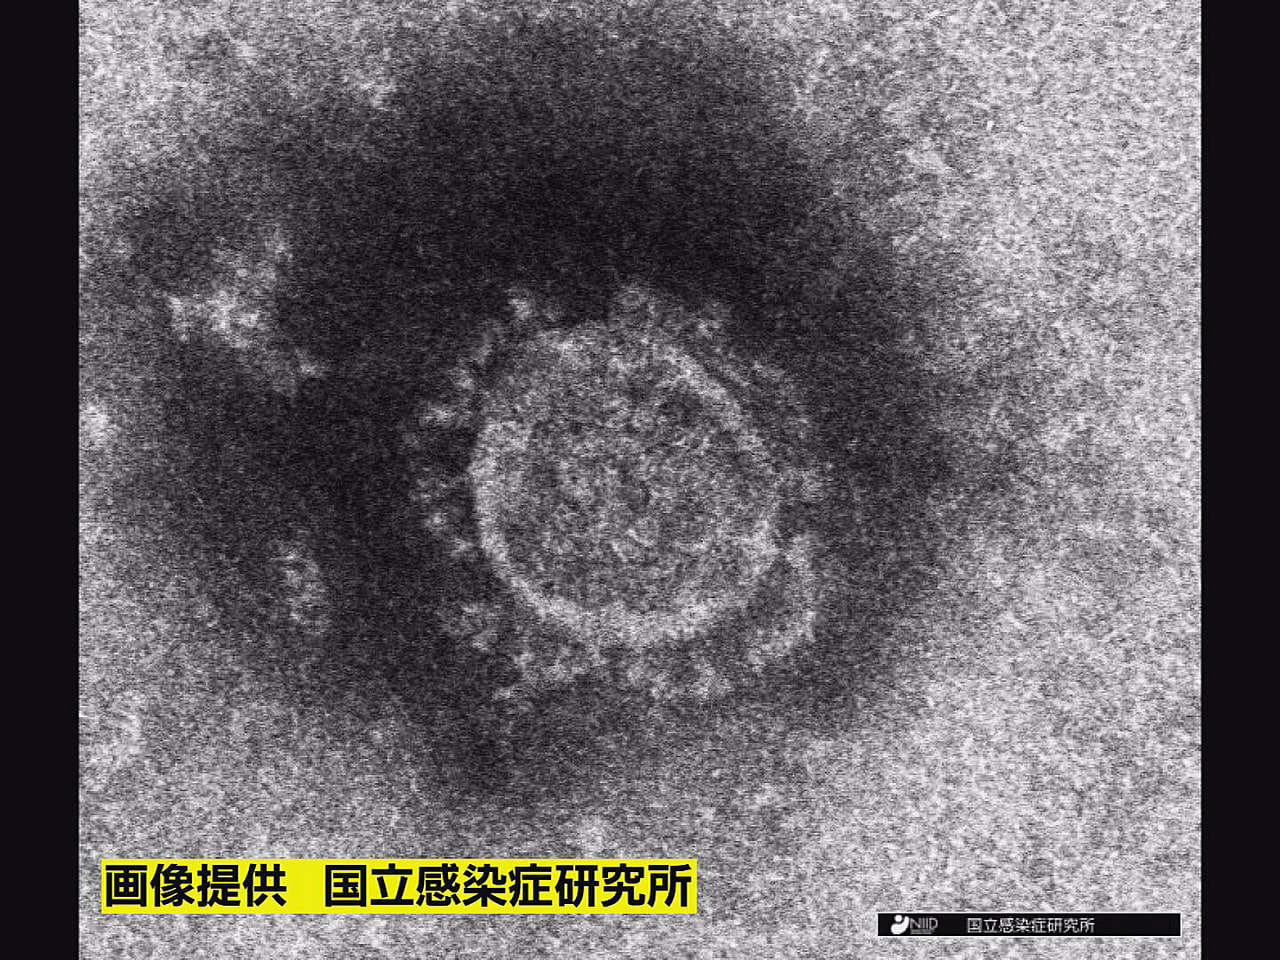 岐阜県は６日、新型コロナウイルスの新規感染者が３５５人確認されたと発表しました。...